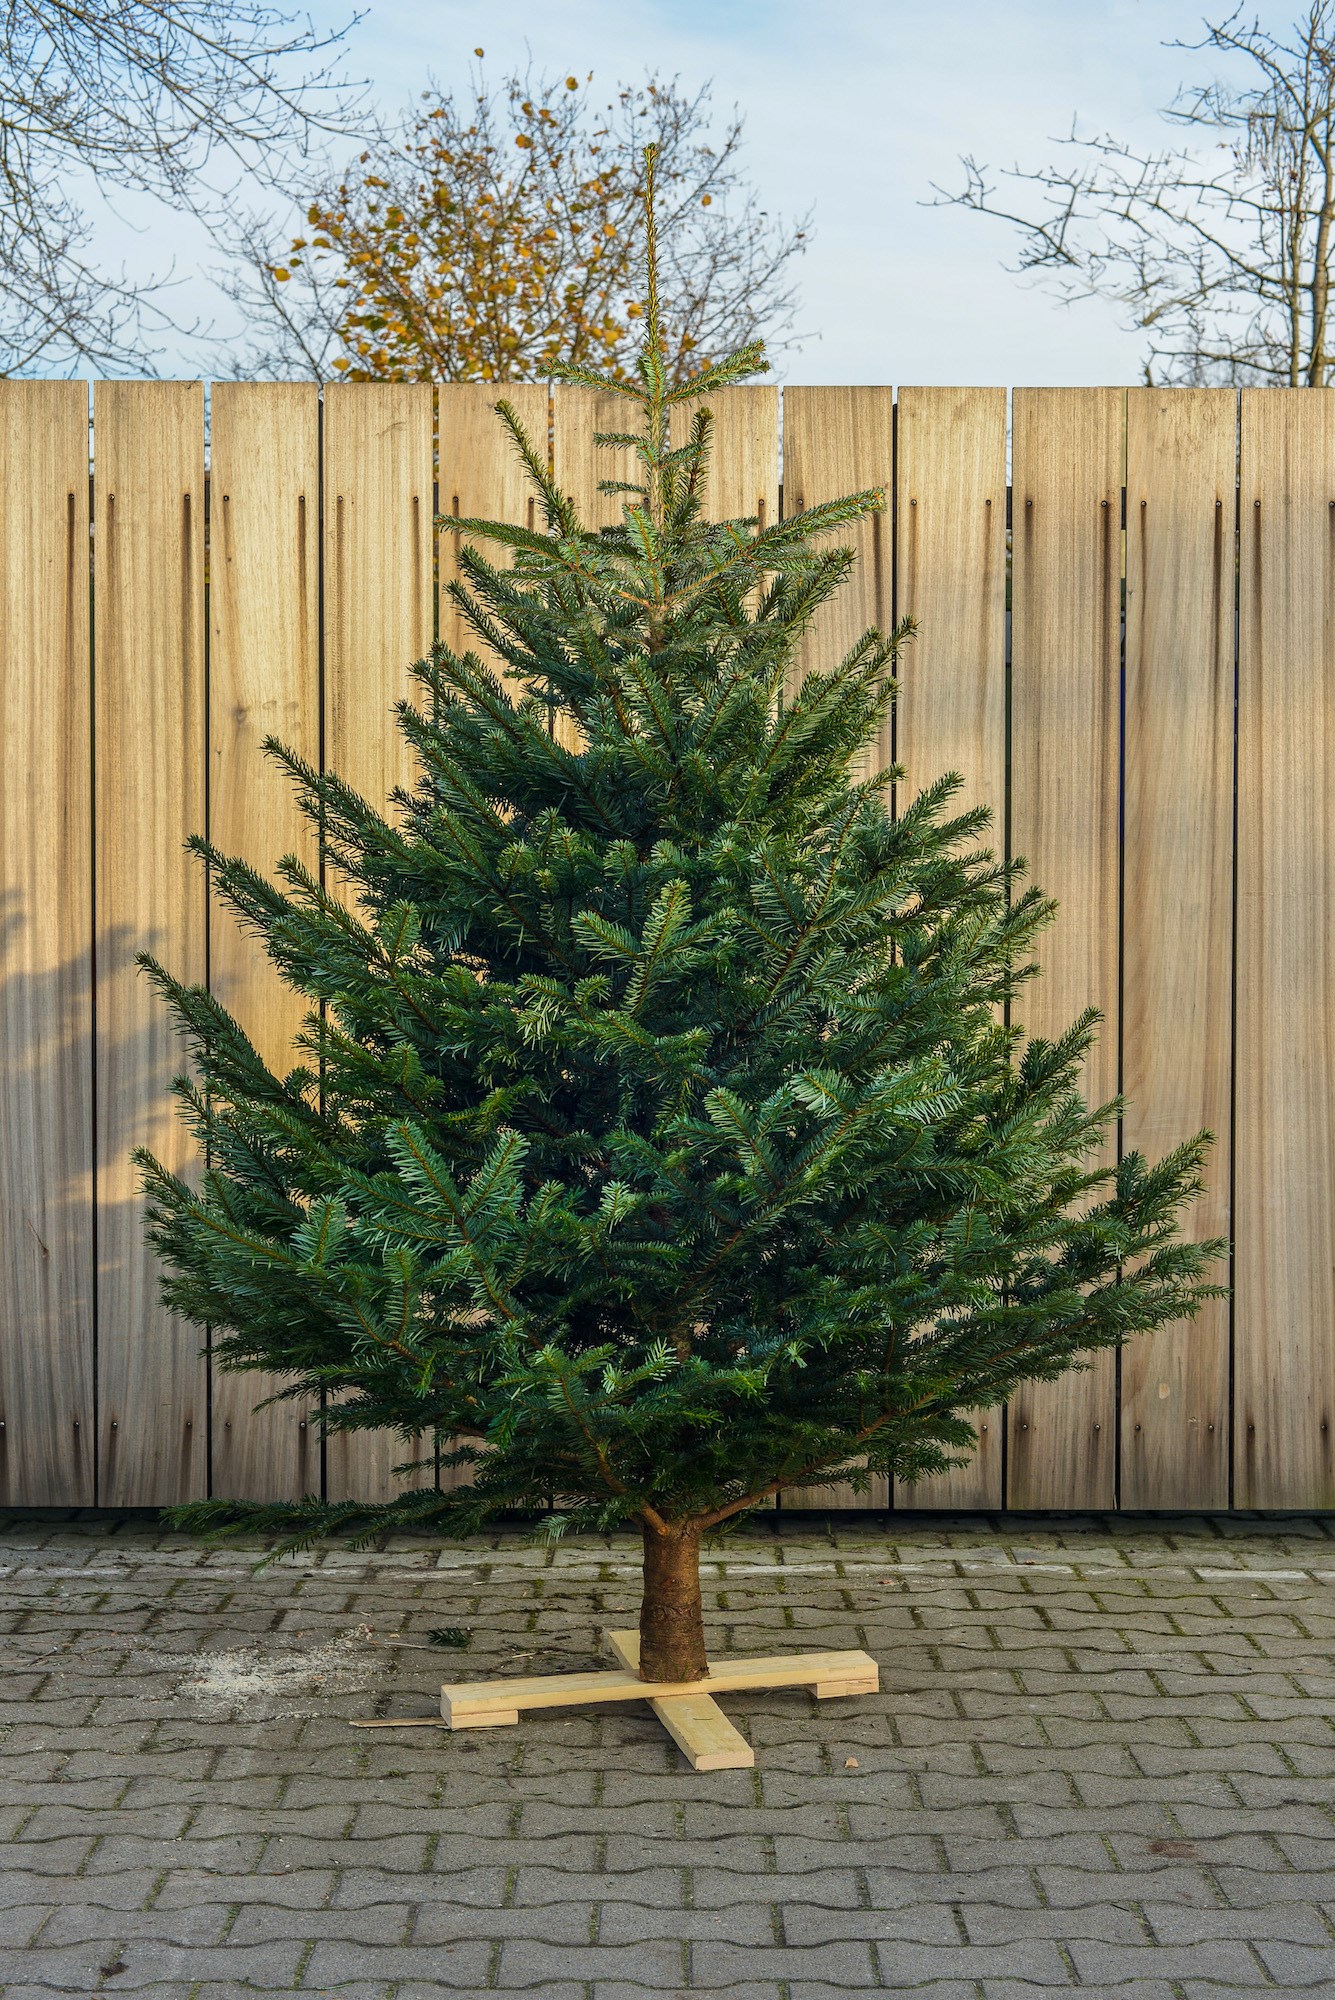 bestellen Marine ondeugd Kerstboom aanschaffen en verzorgen